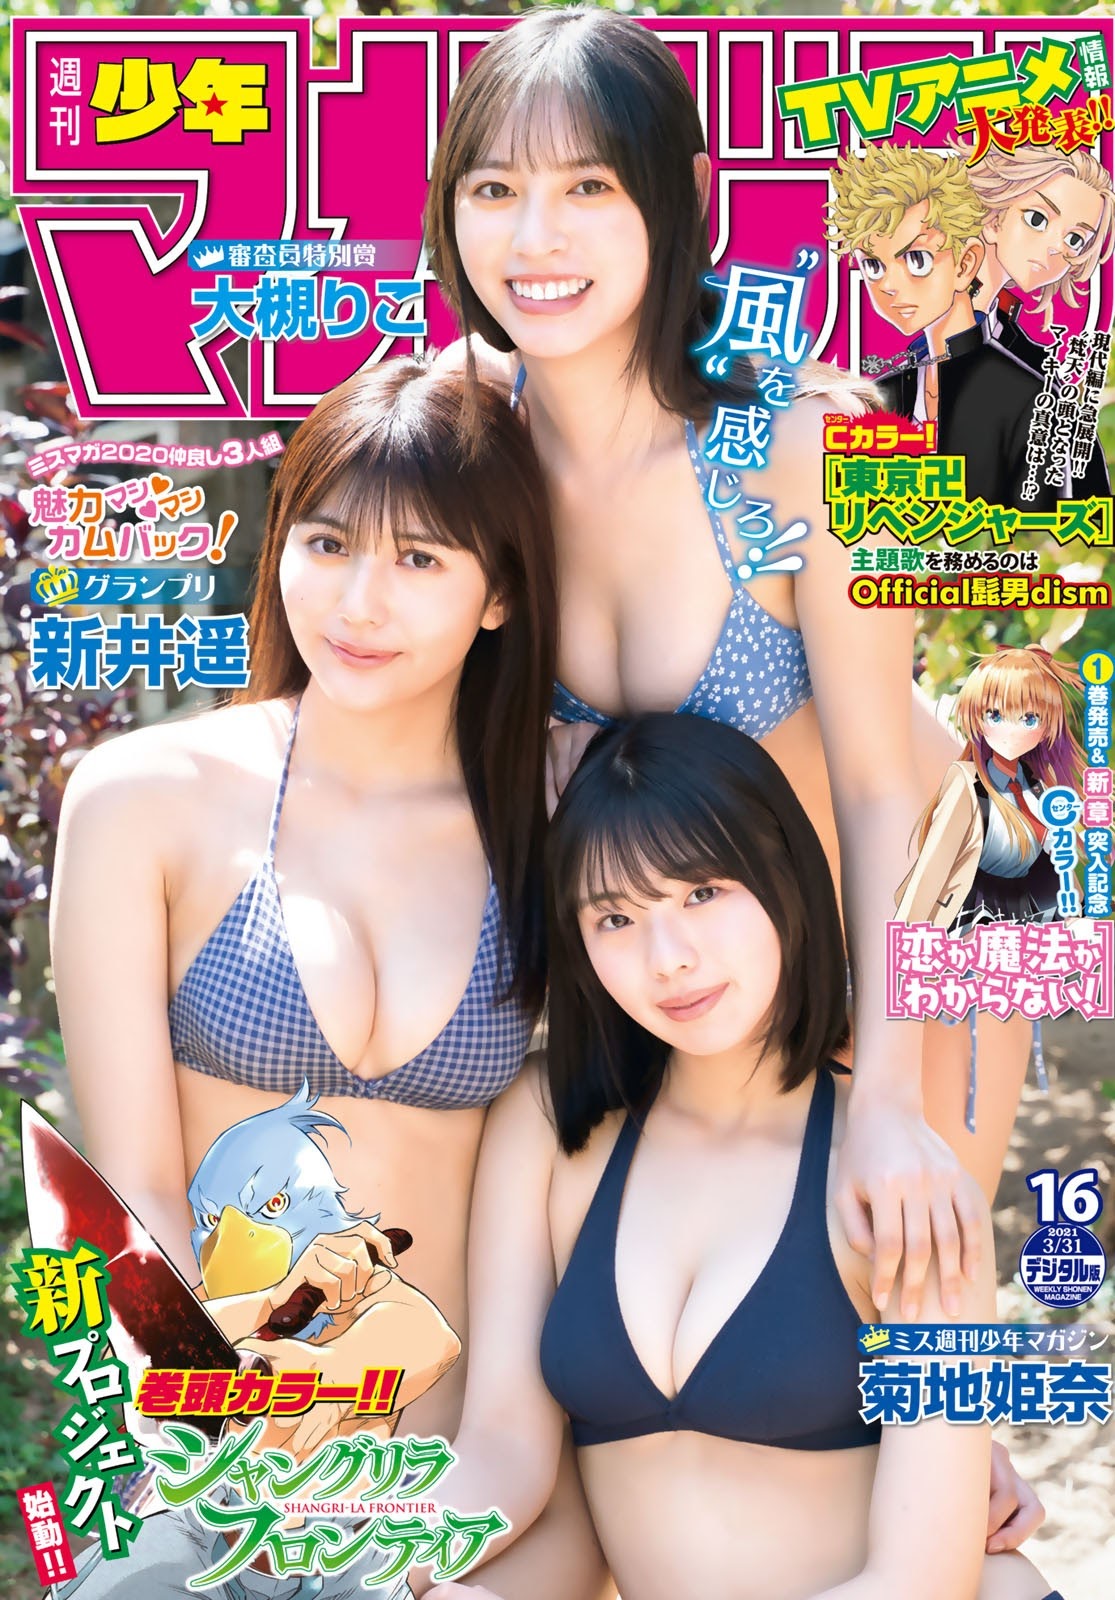 ミスマガ2020仲良し3人組が登場！, Shonen Magazine 2021 No.16 (週刊少年マガジン 2021年16号)